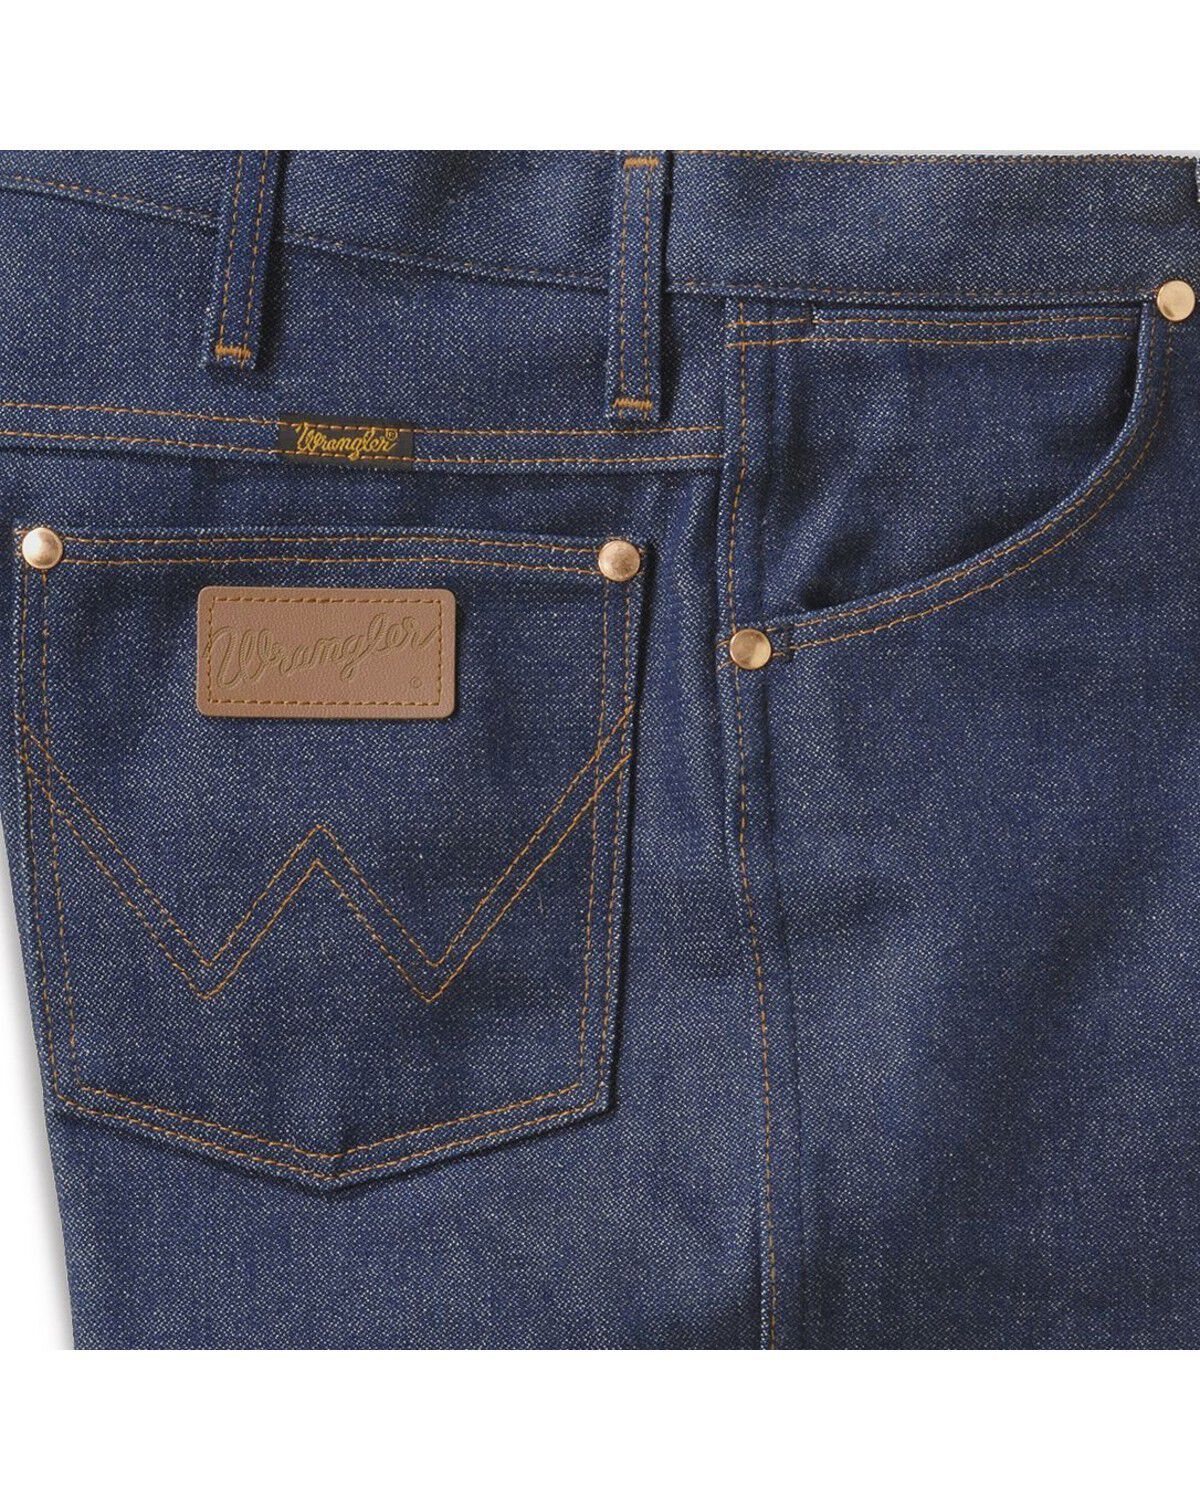 wrangler light jeans